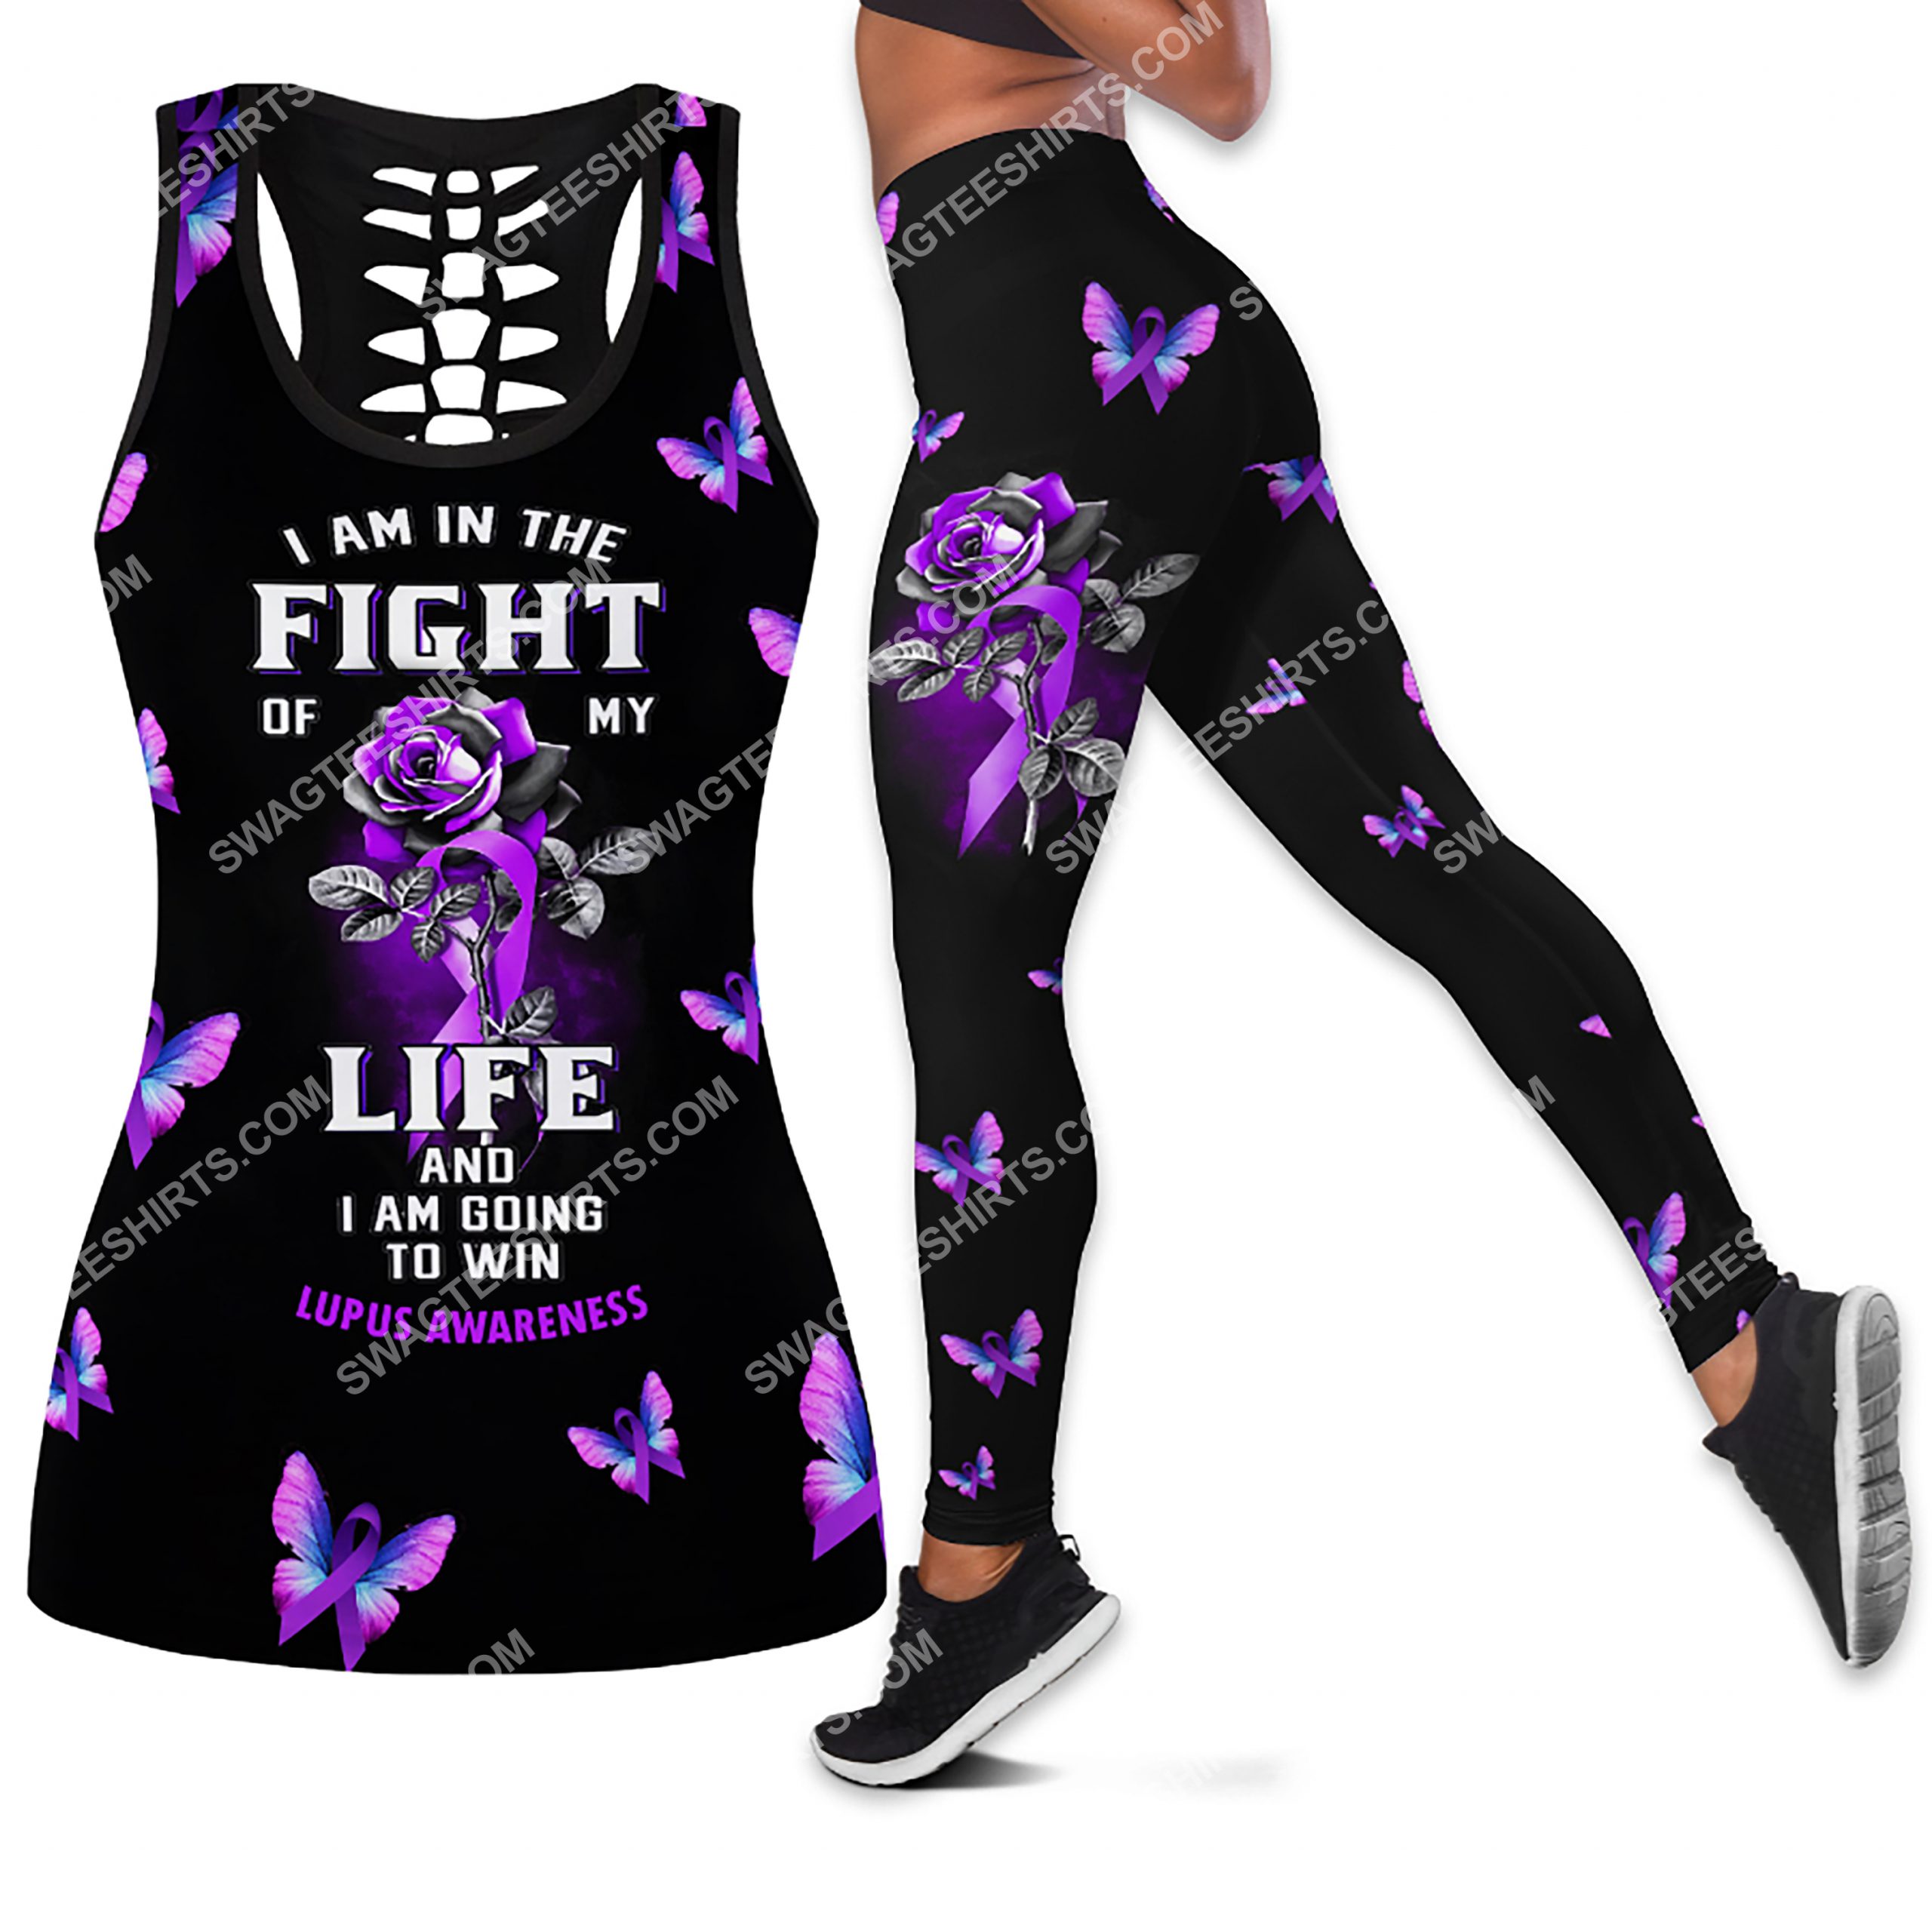 i am in the fight of my life and i am going to win lupus awareness all over printed leggings set 1